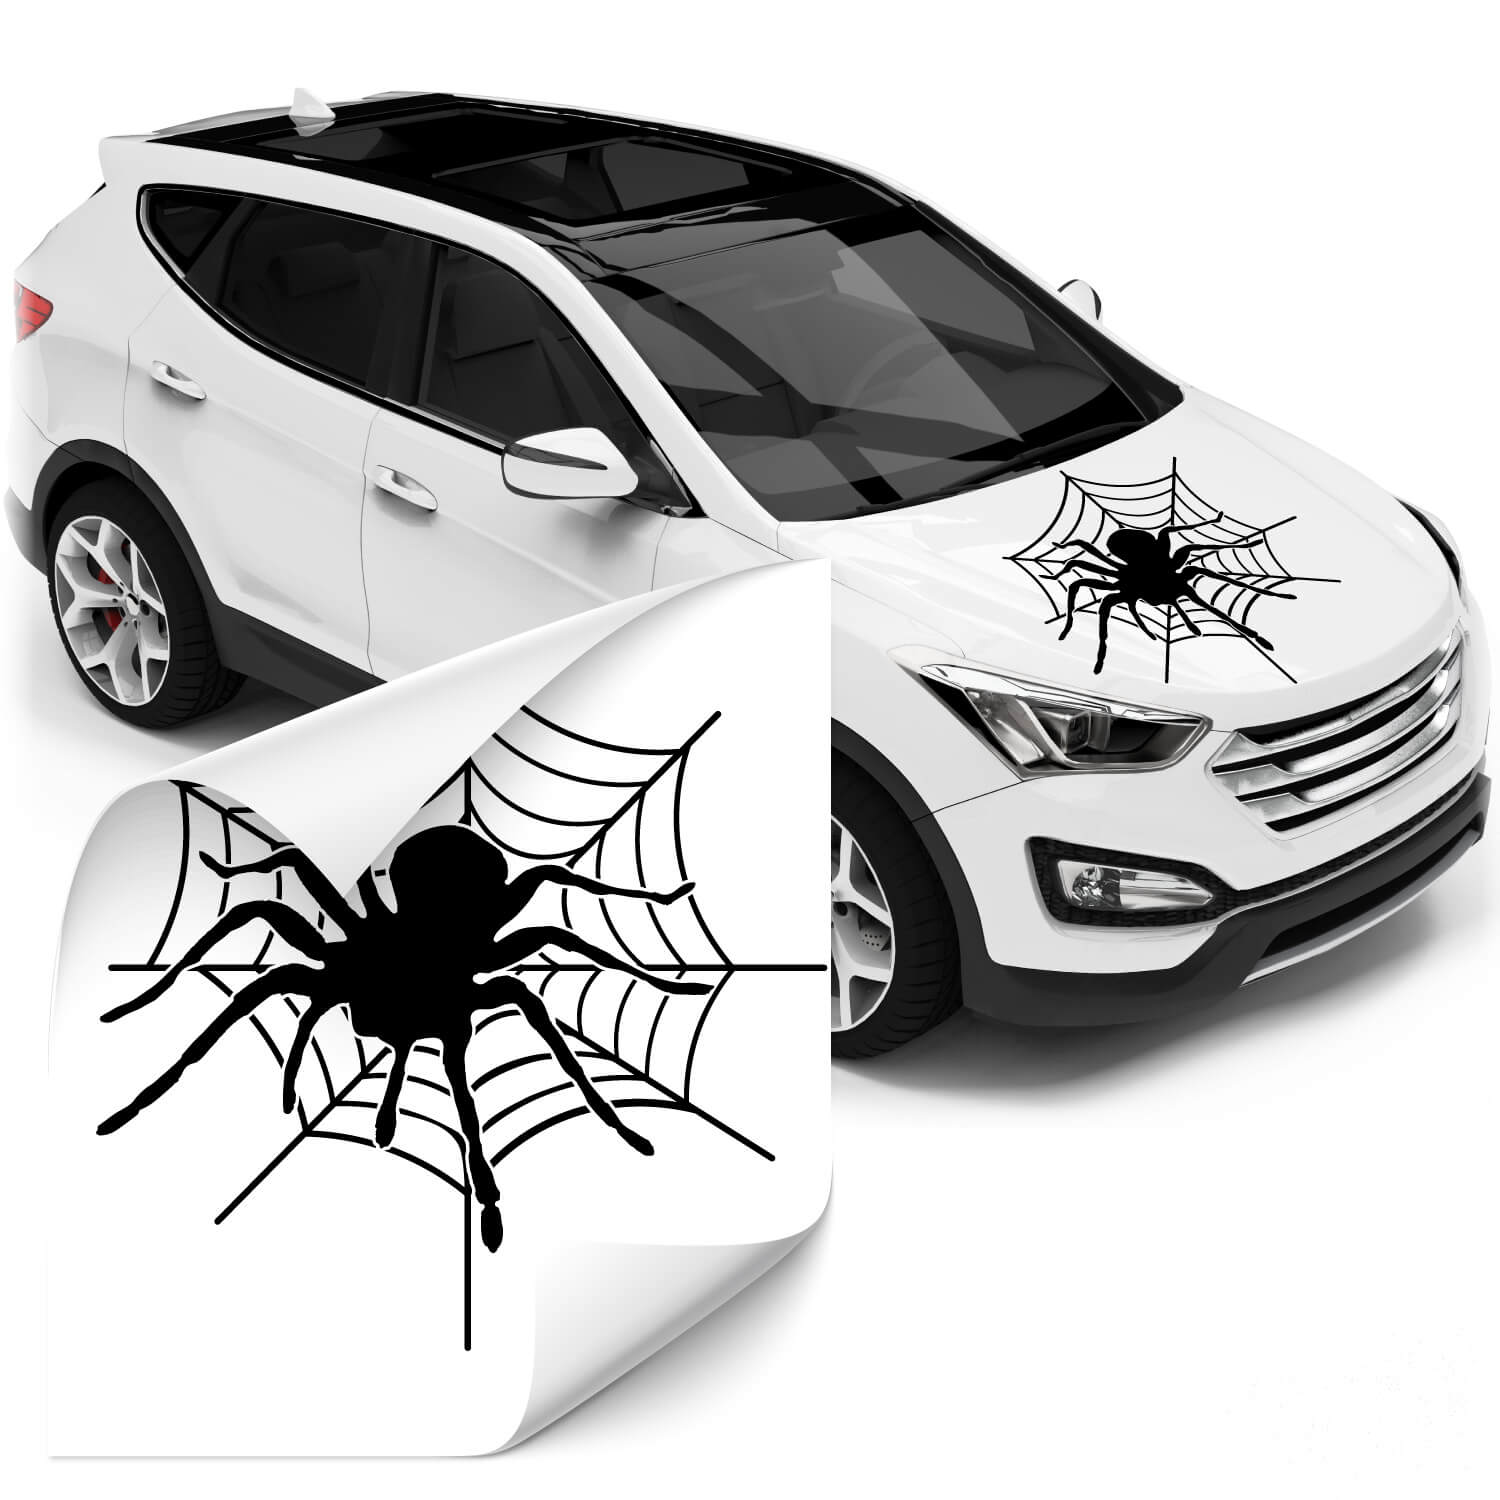 Motorhauben Aufkleber mit Spinne im Netz jetzt günstig bei Klebe-X kaufen!